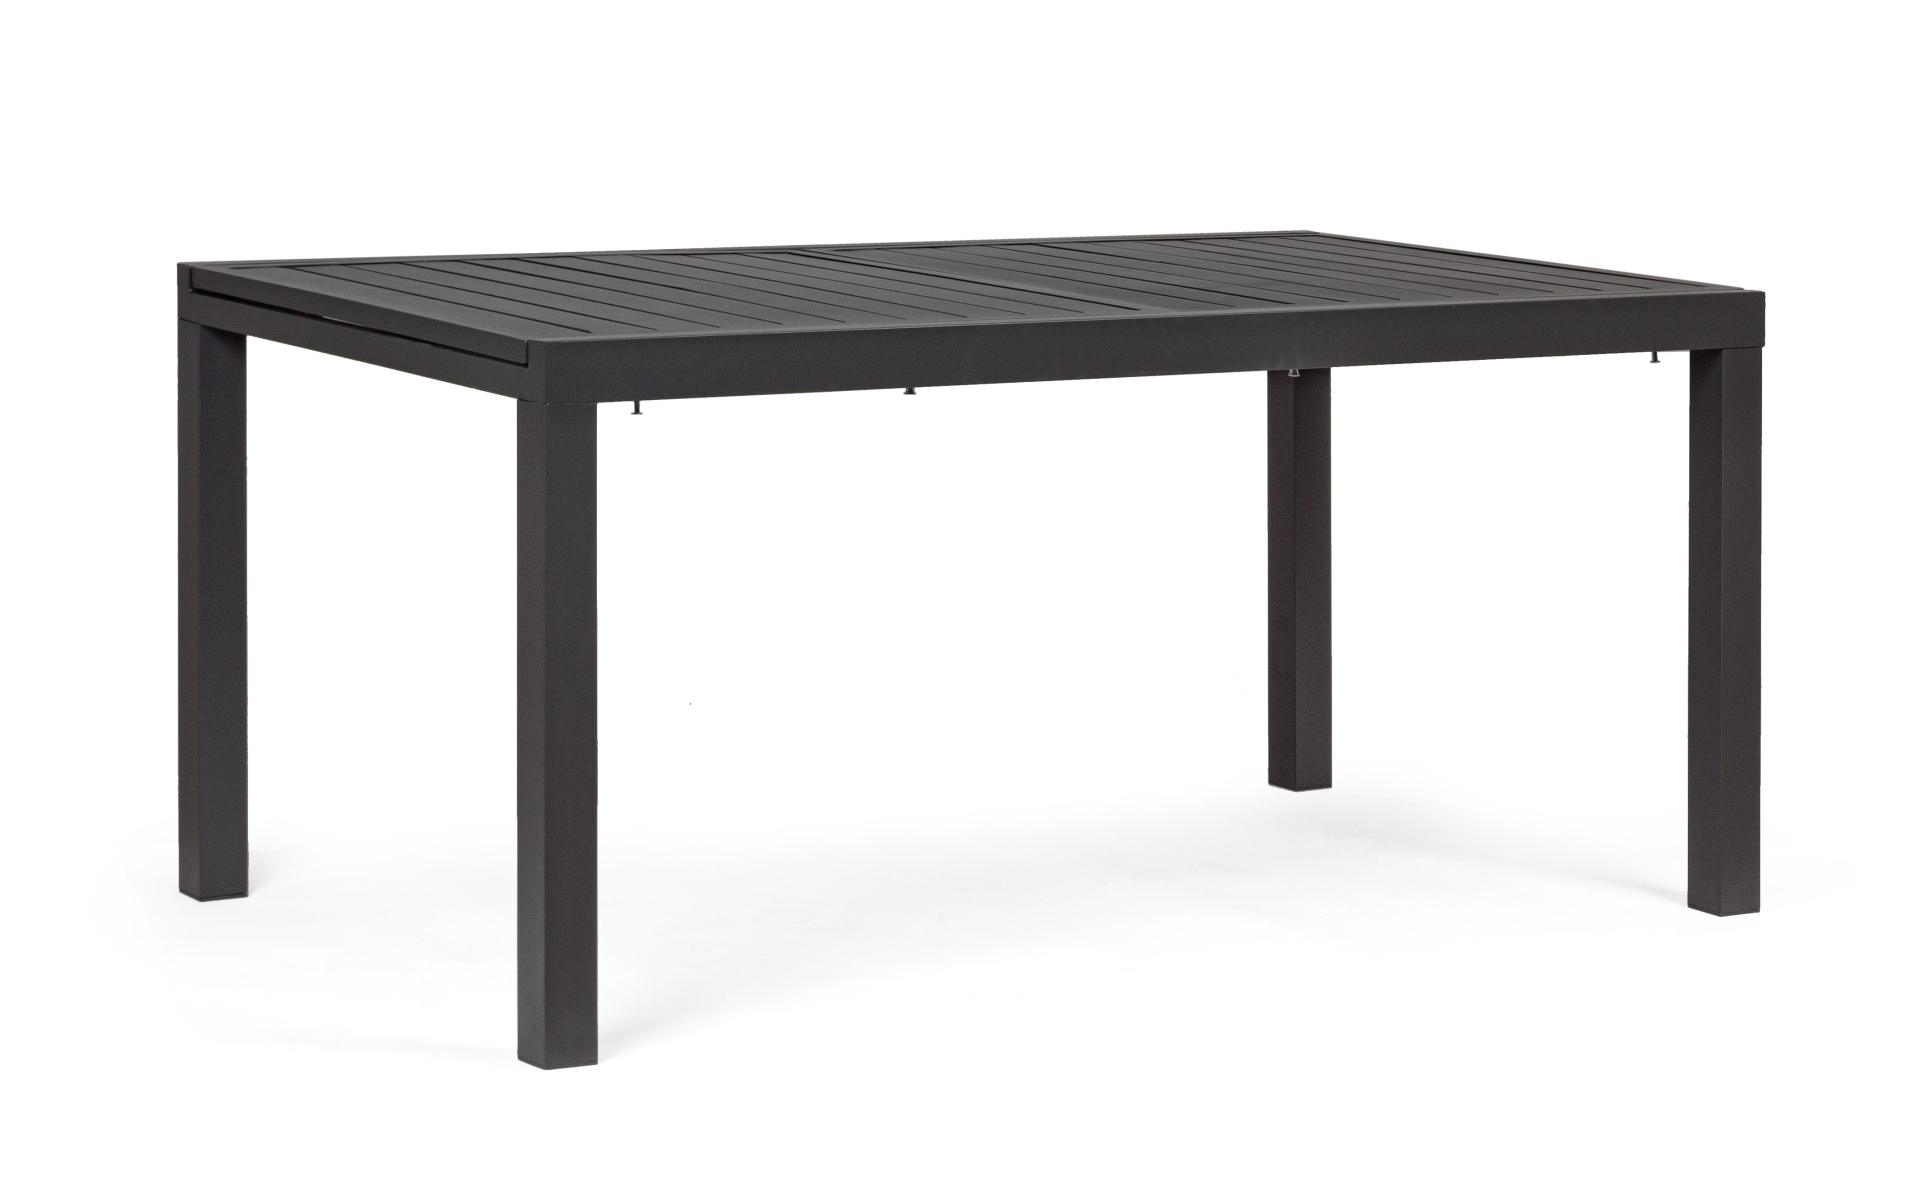 Tisch ausziehbar HILDE 160-240X90 anthrazit